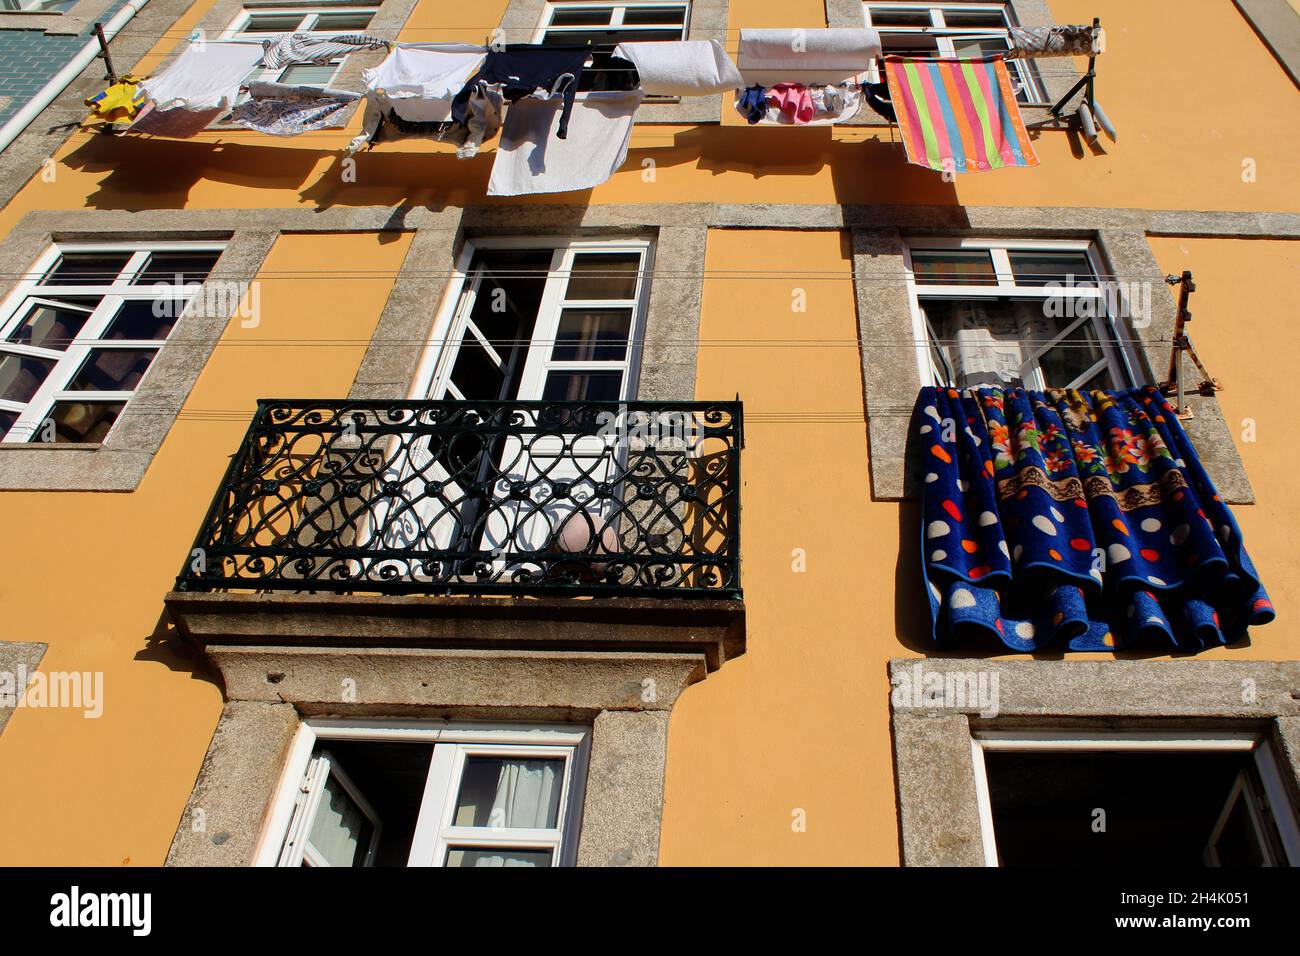 Bunte Wäsche trocknet in der Sonne an einer Wäscheleine, die an einer gelben Hauswand angebracht ist in Porto, Portogallo. Foto Stock